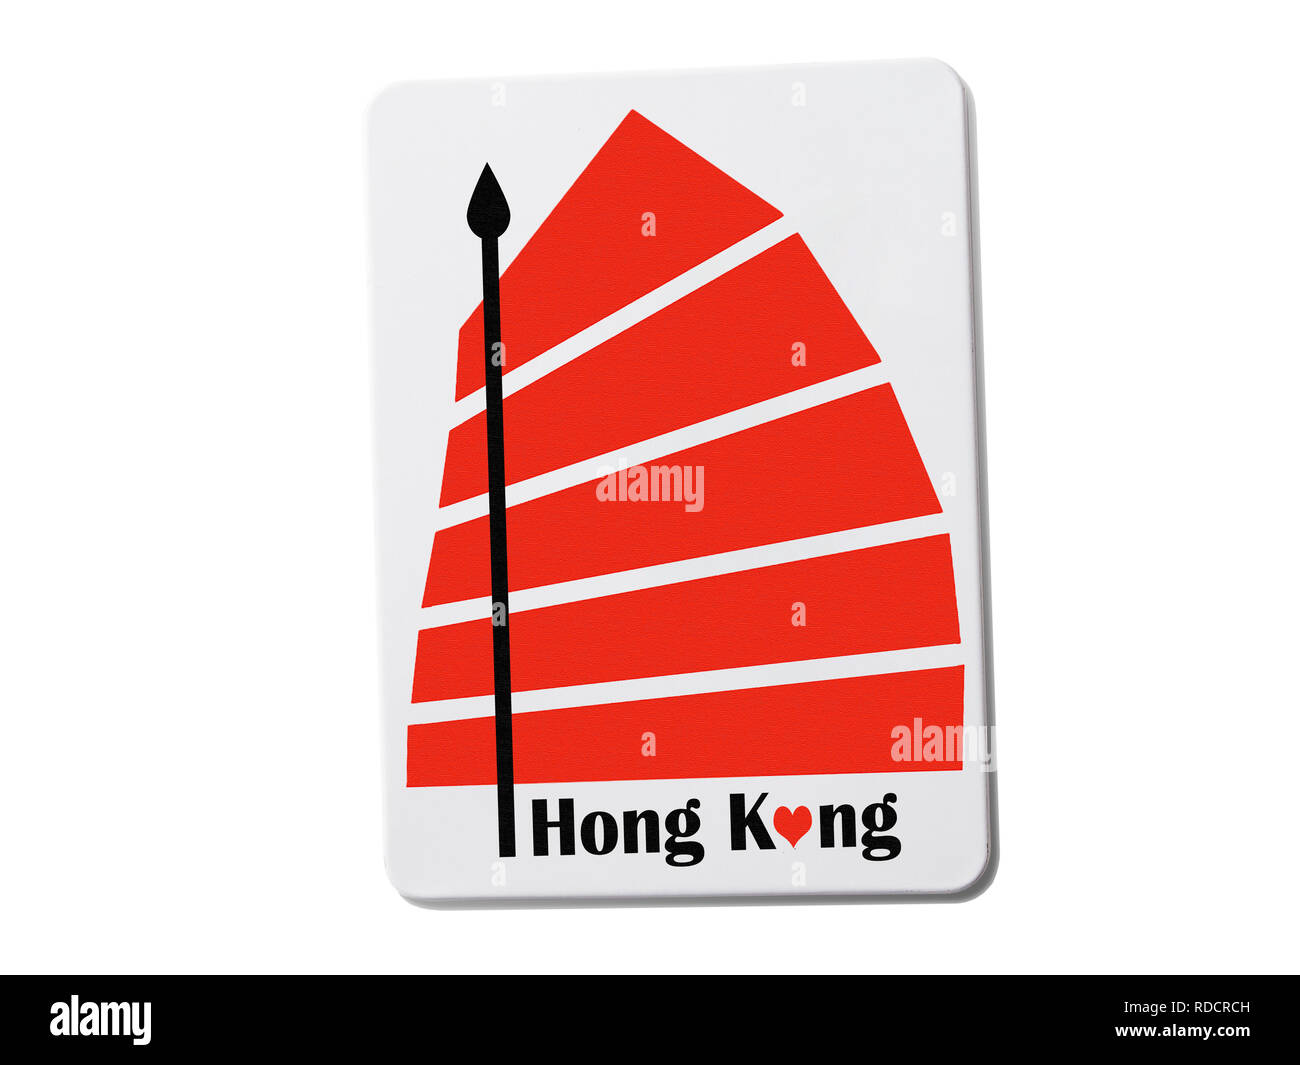 Hong Kong (Chine) aimant de réfrigérateur souvenir isolé sur fond blanc Banque D'Images